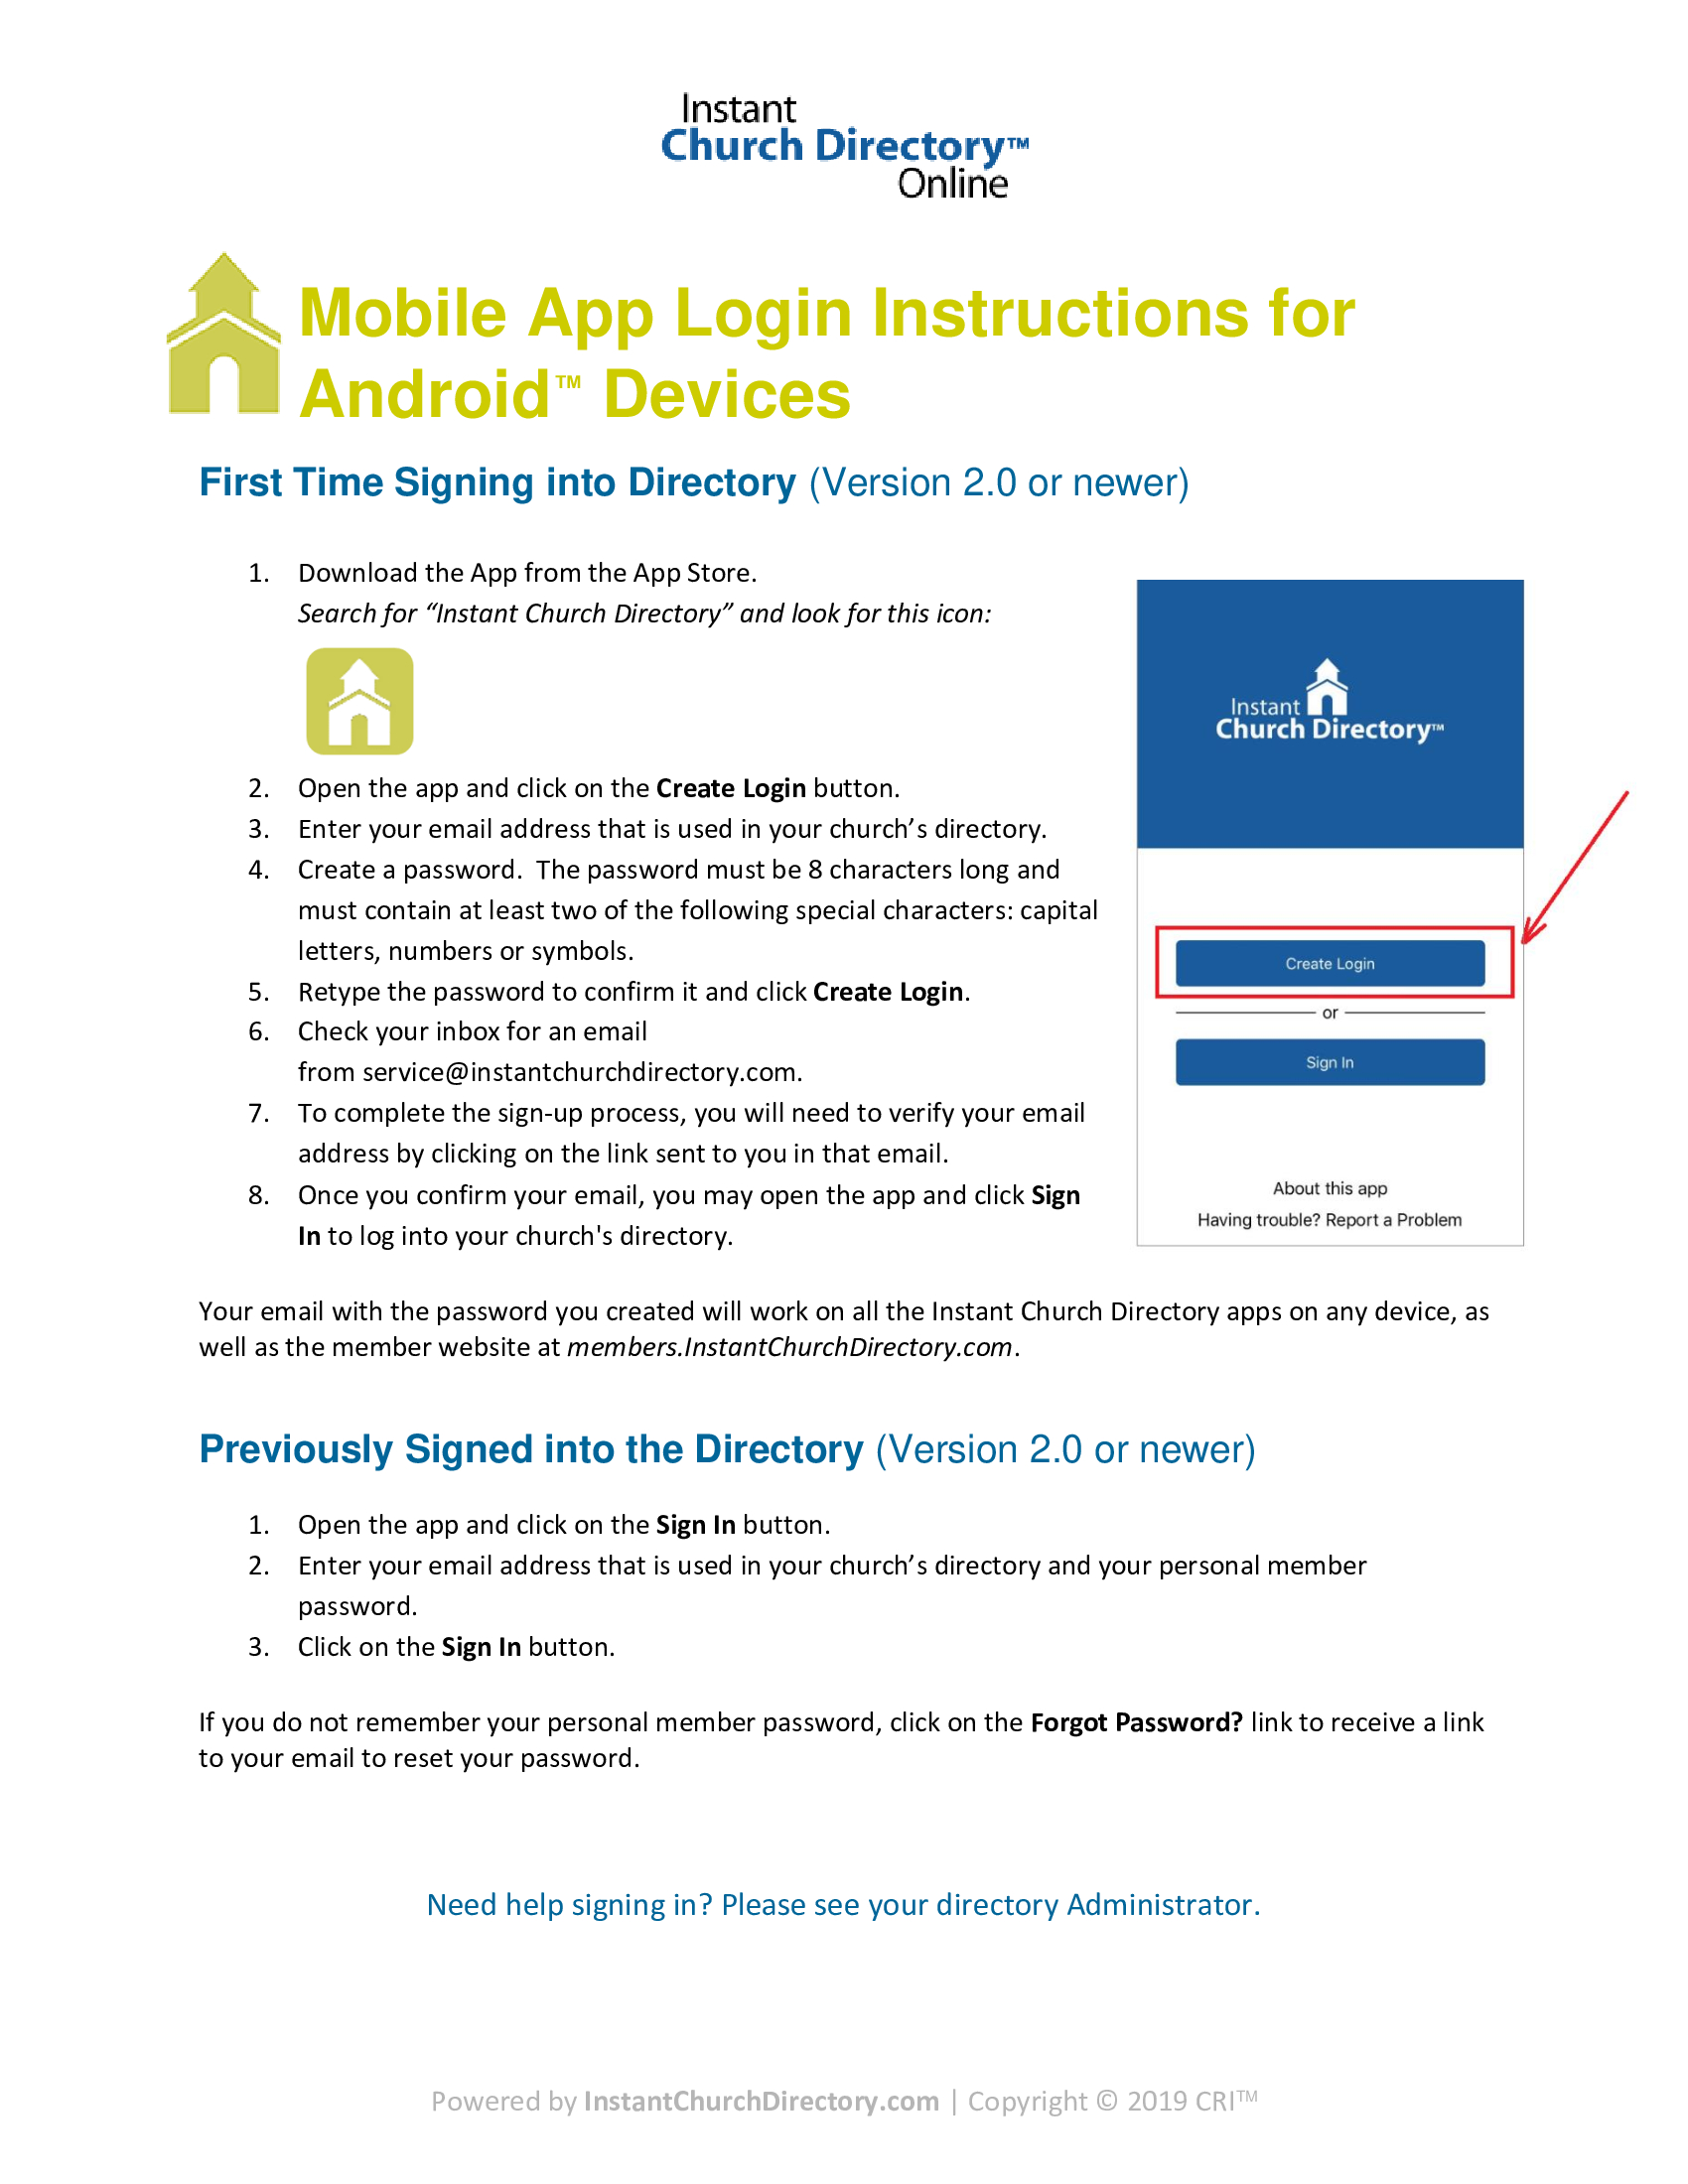 Member-Login-AndroidApp-Instructions.jpg